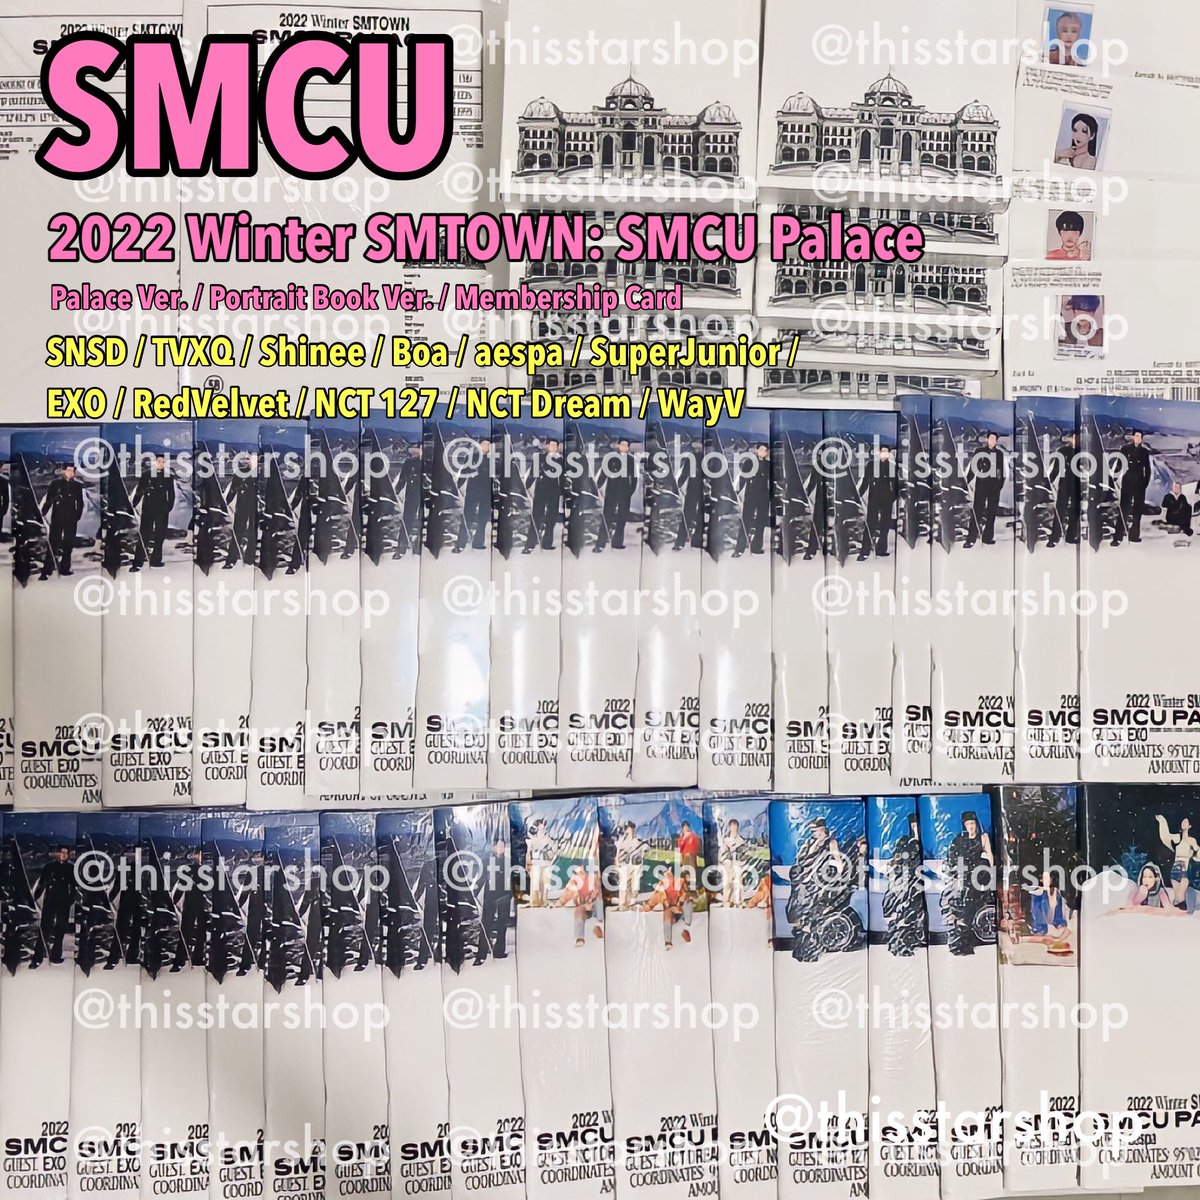 🔥พร้อมส่ง🔥ไม่แกะ สั่งซื้อshop.line.me/@540jhctm

✅2022 Season's Greetings
✅2021 Winter SMTOWN: SMCU Express
✅SMCU Palace Membership Card

#ตลาดนัดnct127 #ตลาดนัดnctdream #ตลาดนัดwayv #ตลาดนัดaespa #ตลาดนัดsnsd #ตลาดนัดredvelvet #ตลาดนัดsuperjunior #ตลาดนัดexo #ตลาดนัดshinee